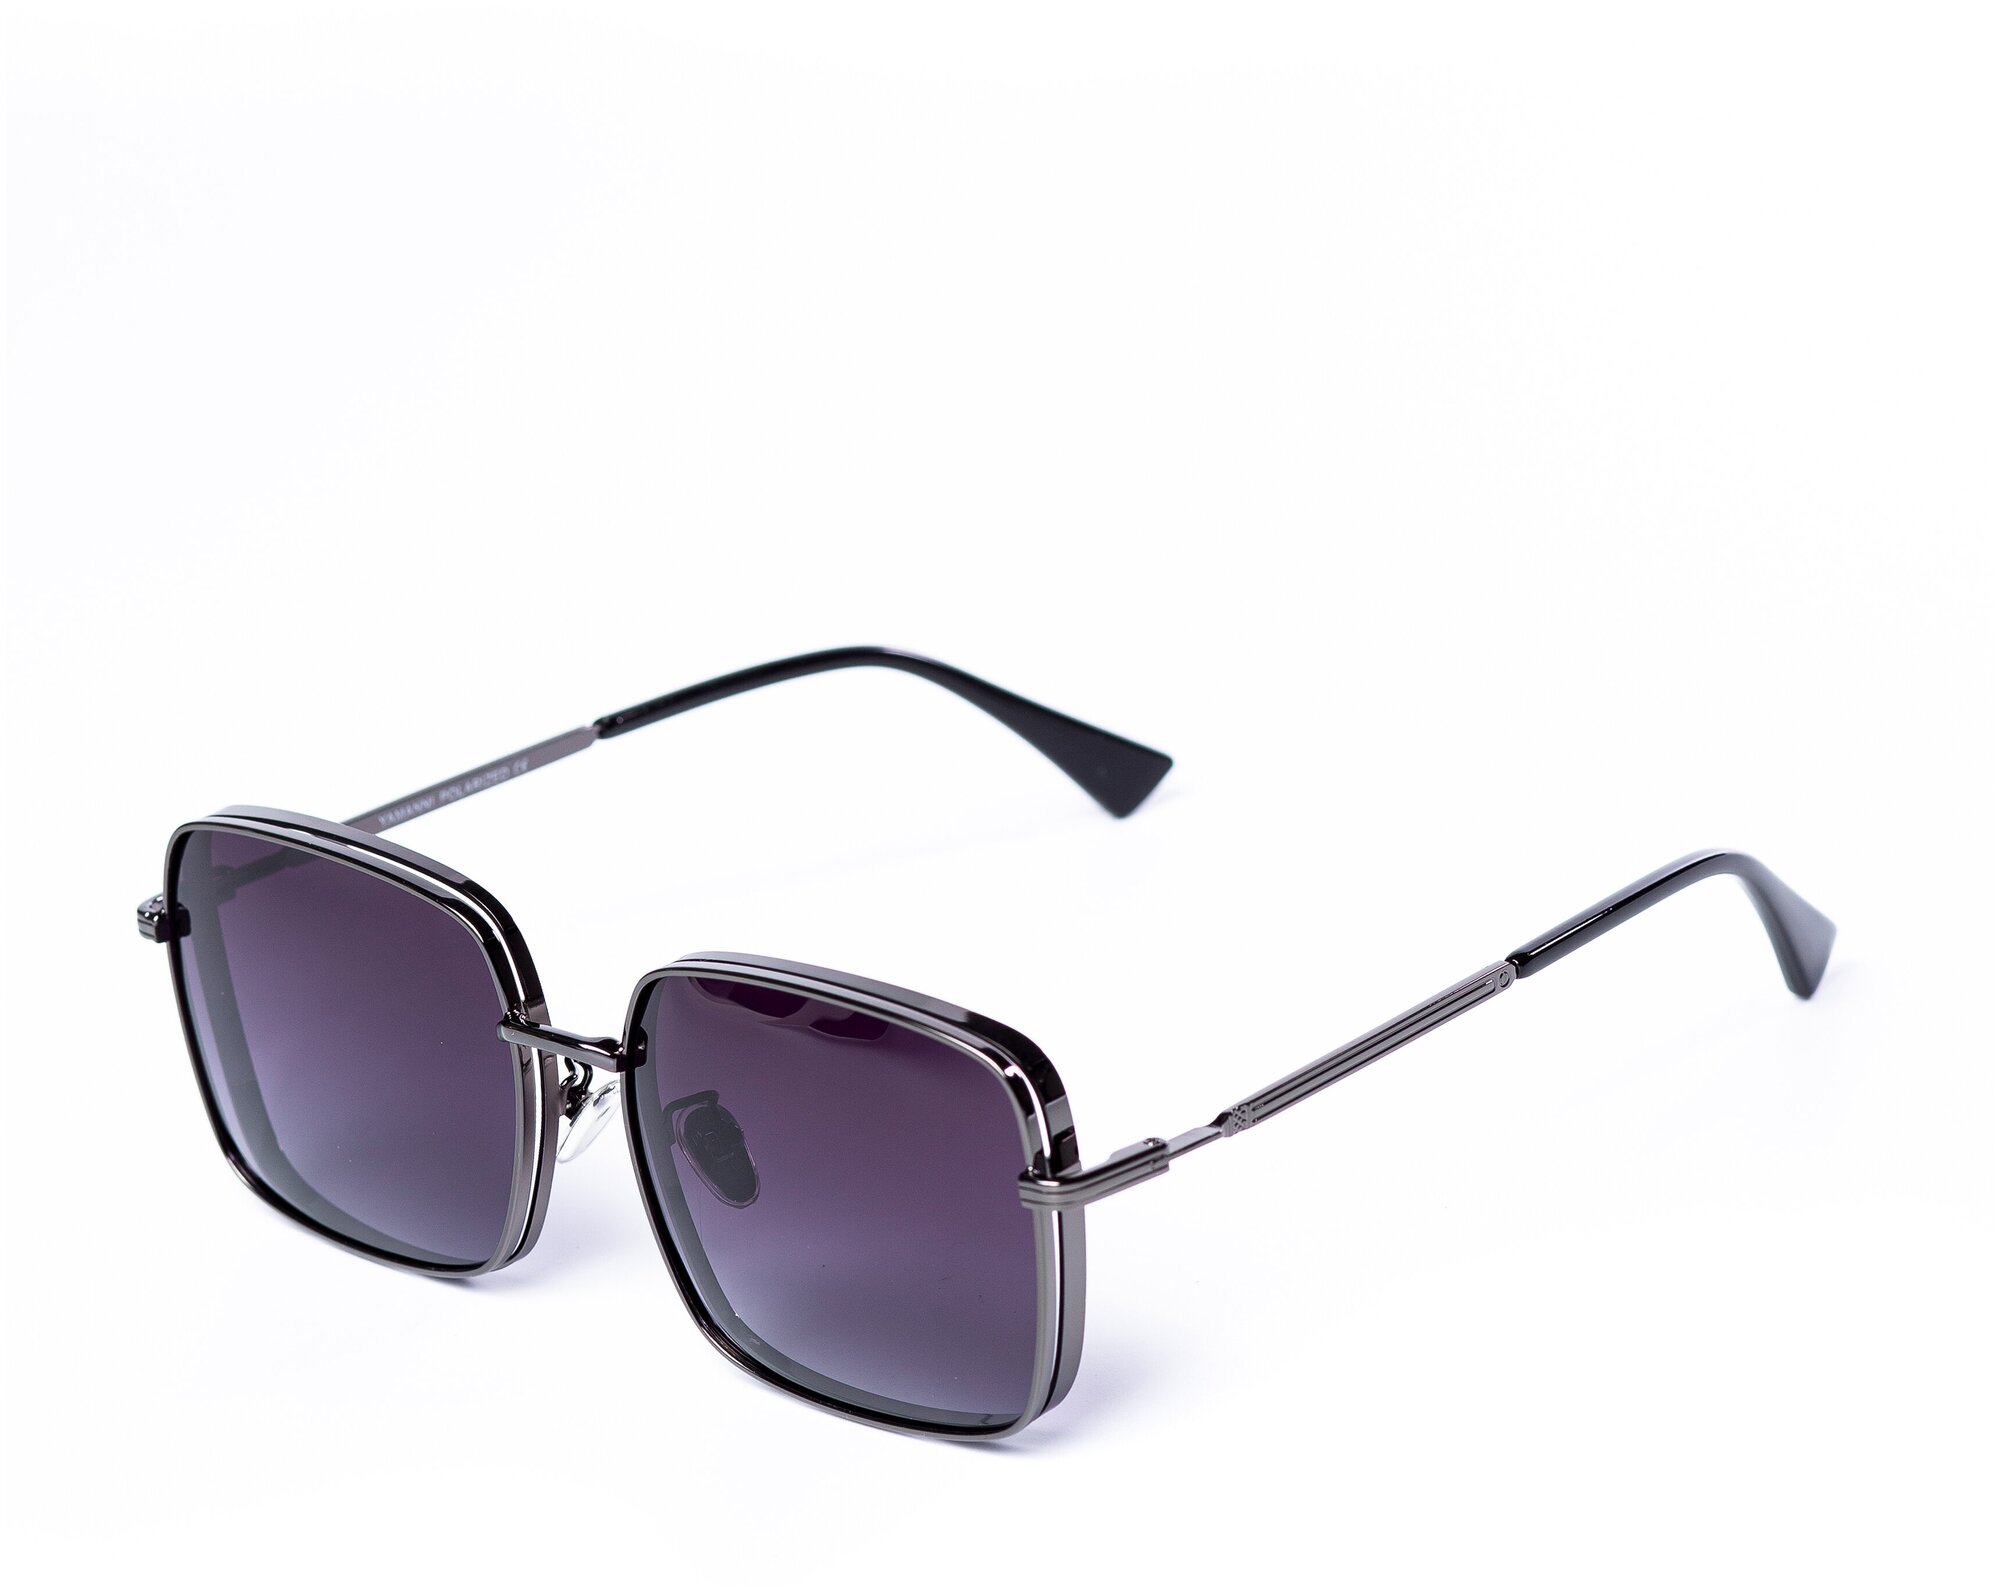 Солнцезащитные очки женские / Квадратная оправа / Стильные очки / Ультрафиолетовый фильтр / Защита UV400 / Чехол в подарок / Темные очки 200422511